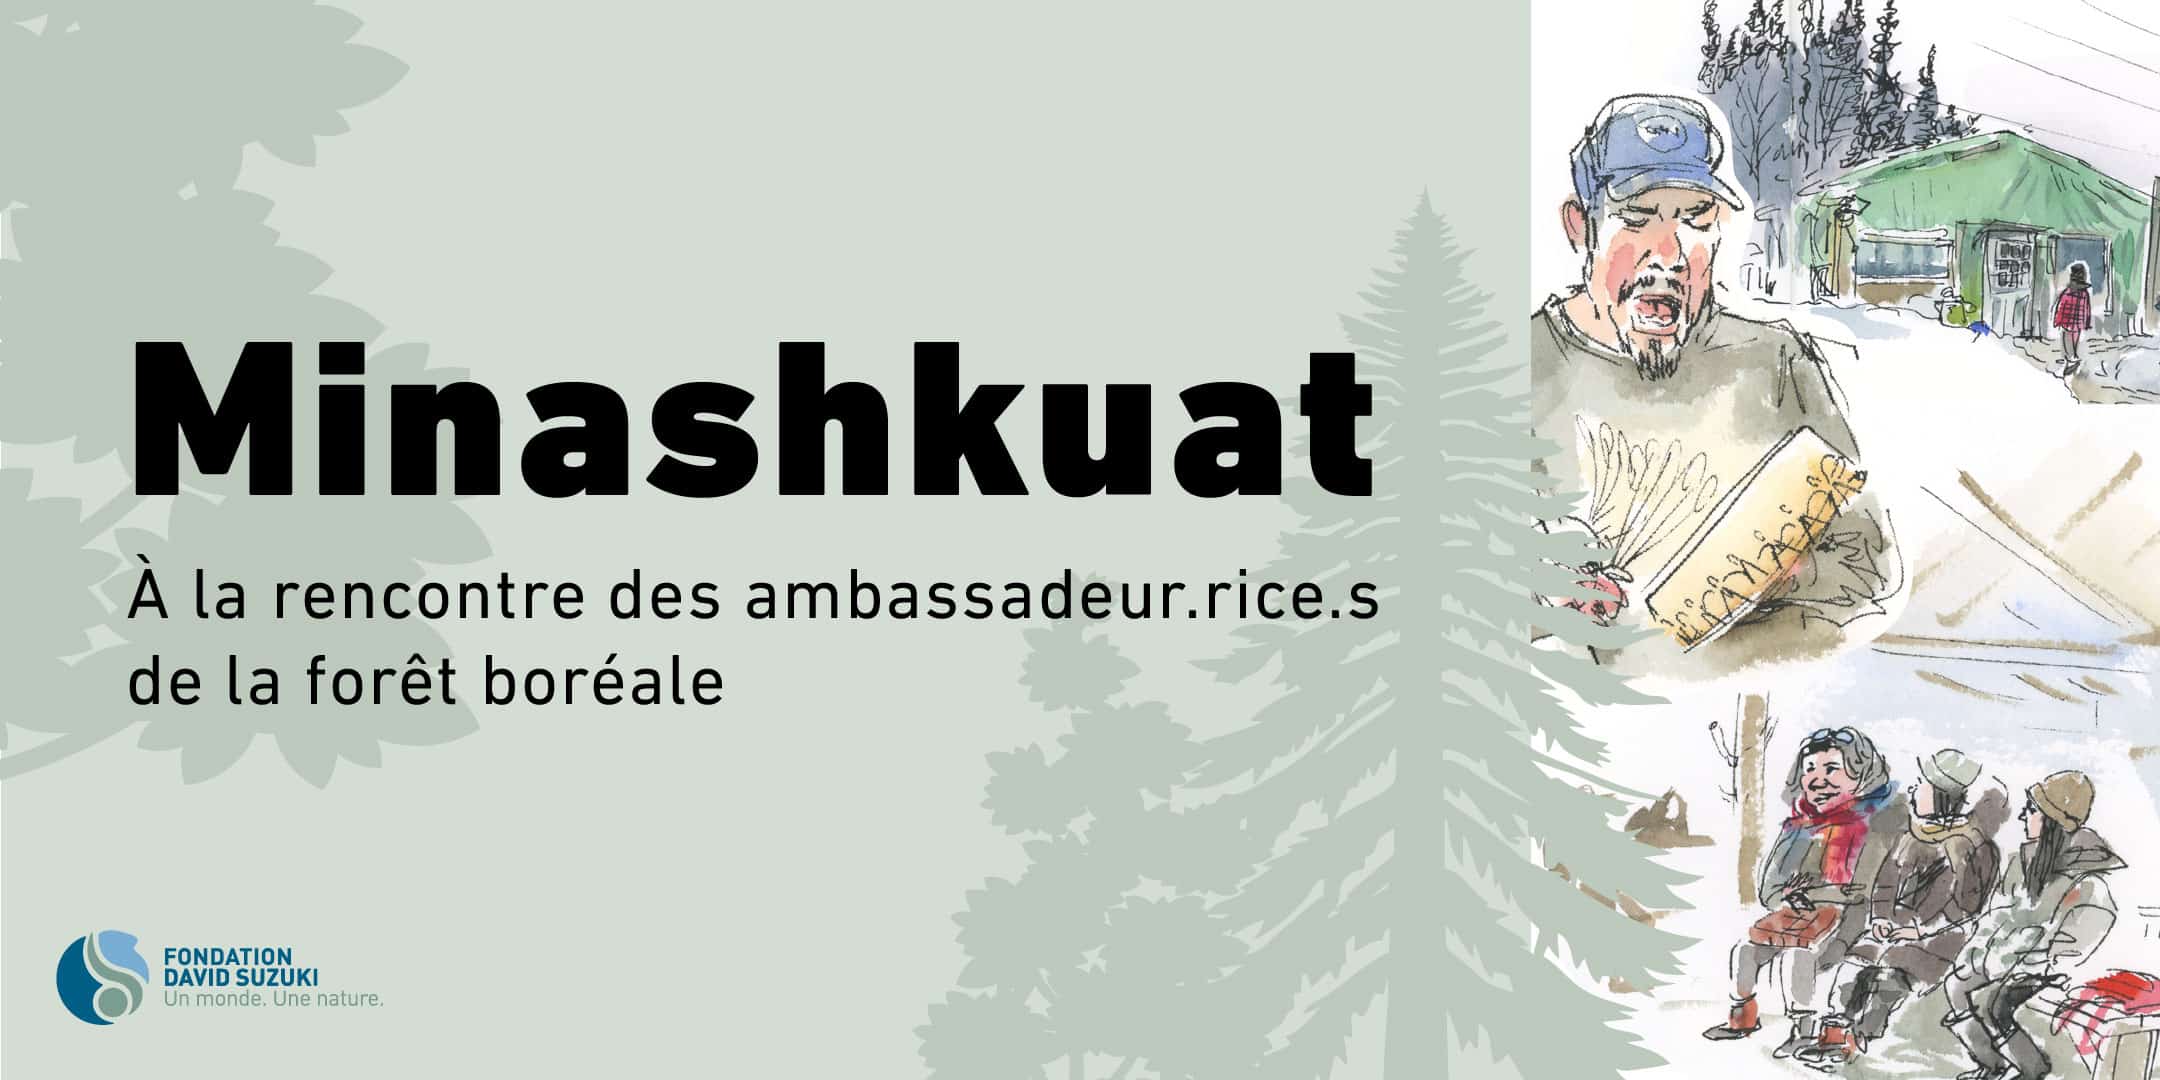 Minashkuat : À la rencontre des ambassadeur.rice.s de la forêt boréale